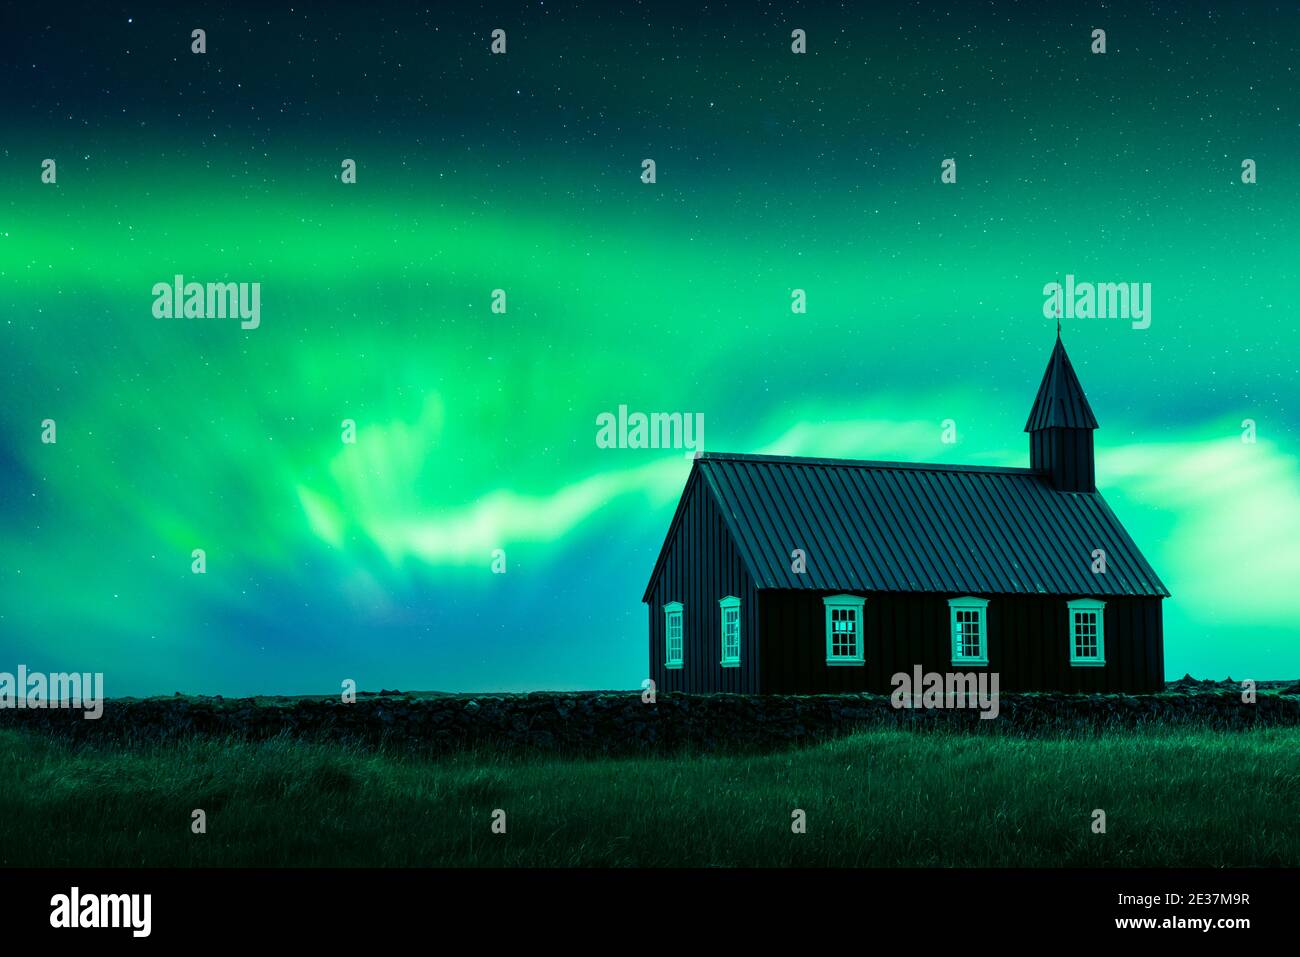 Aurora borealis aurora boreale sopra la famosa e pittoresca chiesa nera di Budir nella regione della penisola di Snaefellsnes in Islanda. Fotografia di paesaggio. Per gentile concessione della NASA. Collage fotografico Foto Stock